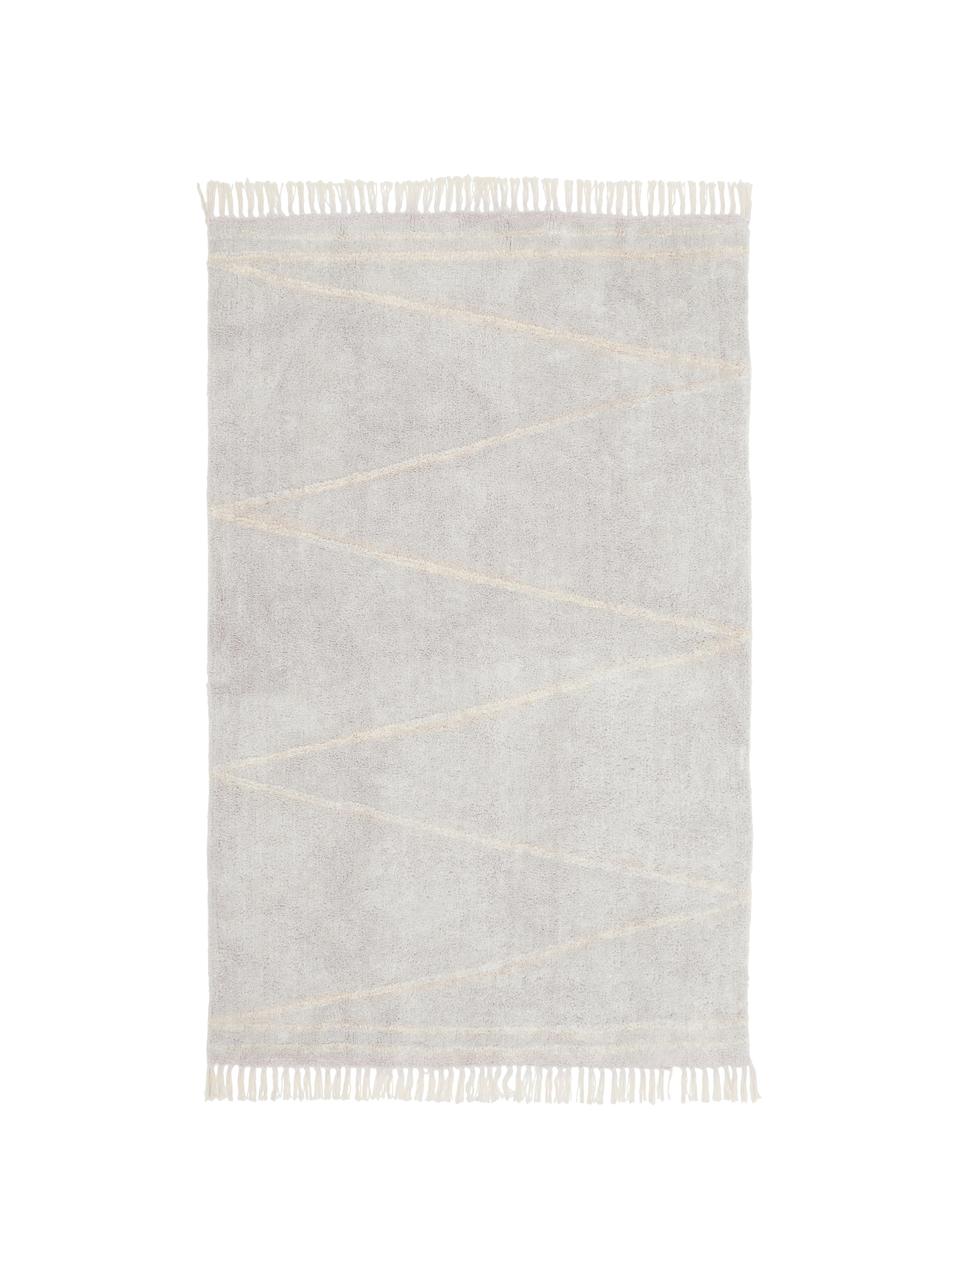 Handgetufteter Baumwollteppich Asisa mit Zickzack-Muster und Fransen, Grau- und Gelbtöne, B 80 x L 150 cm (Größe XS)